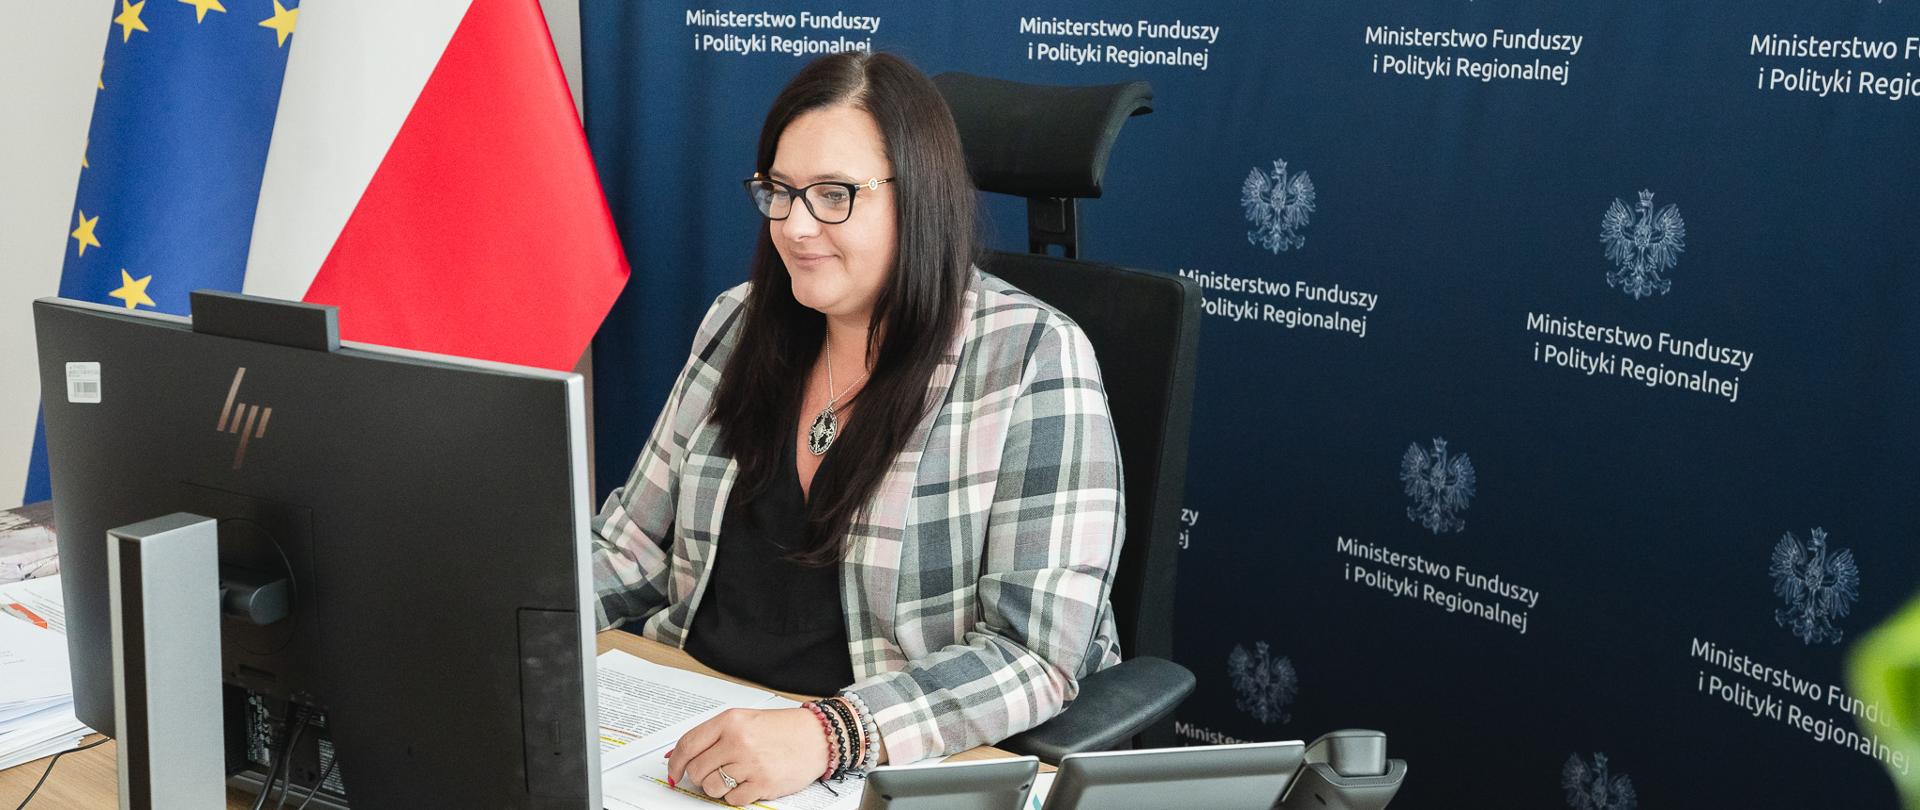 Wiceminister Małgorzata Jarosińska-Jedynak siedzi na fotelu przy biurku i patrzy na monitor, który stoi przed nią. W tle z lewej strony flagi Unii Europejskiej i Polski.